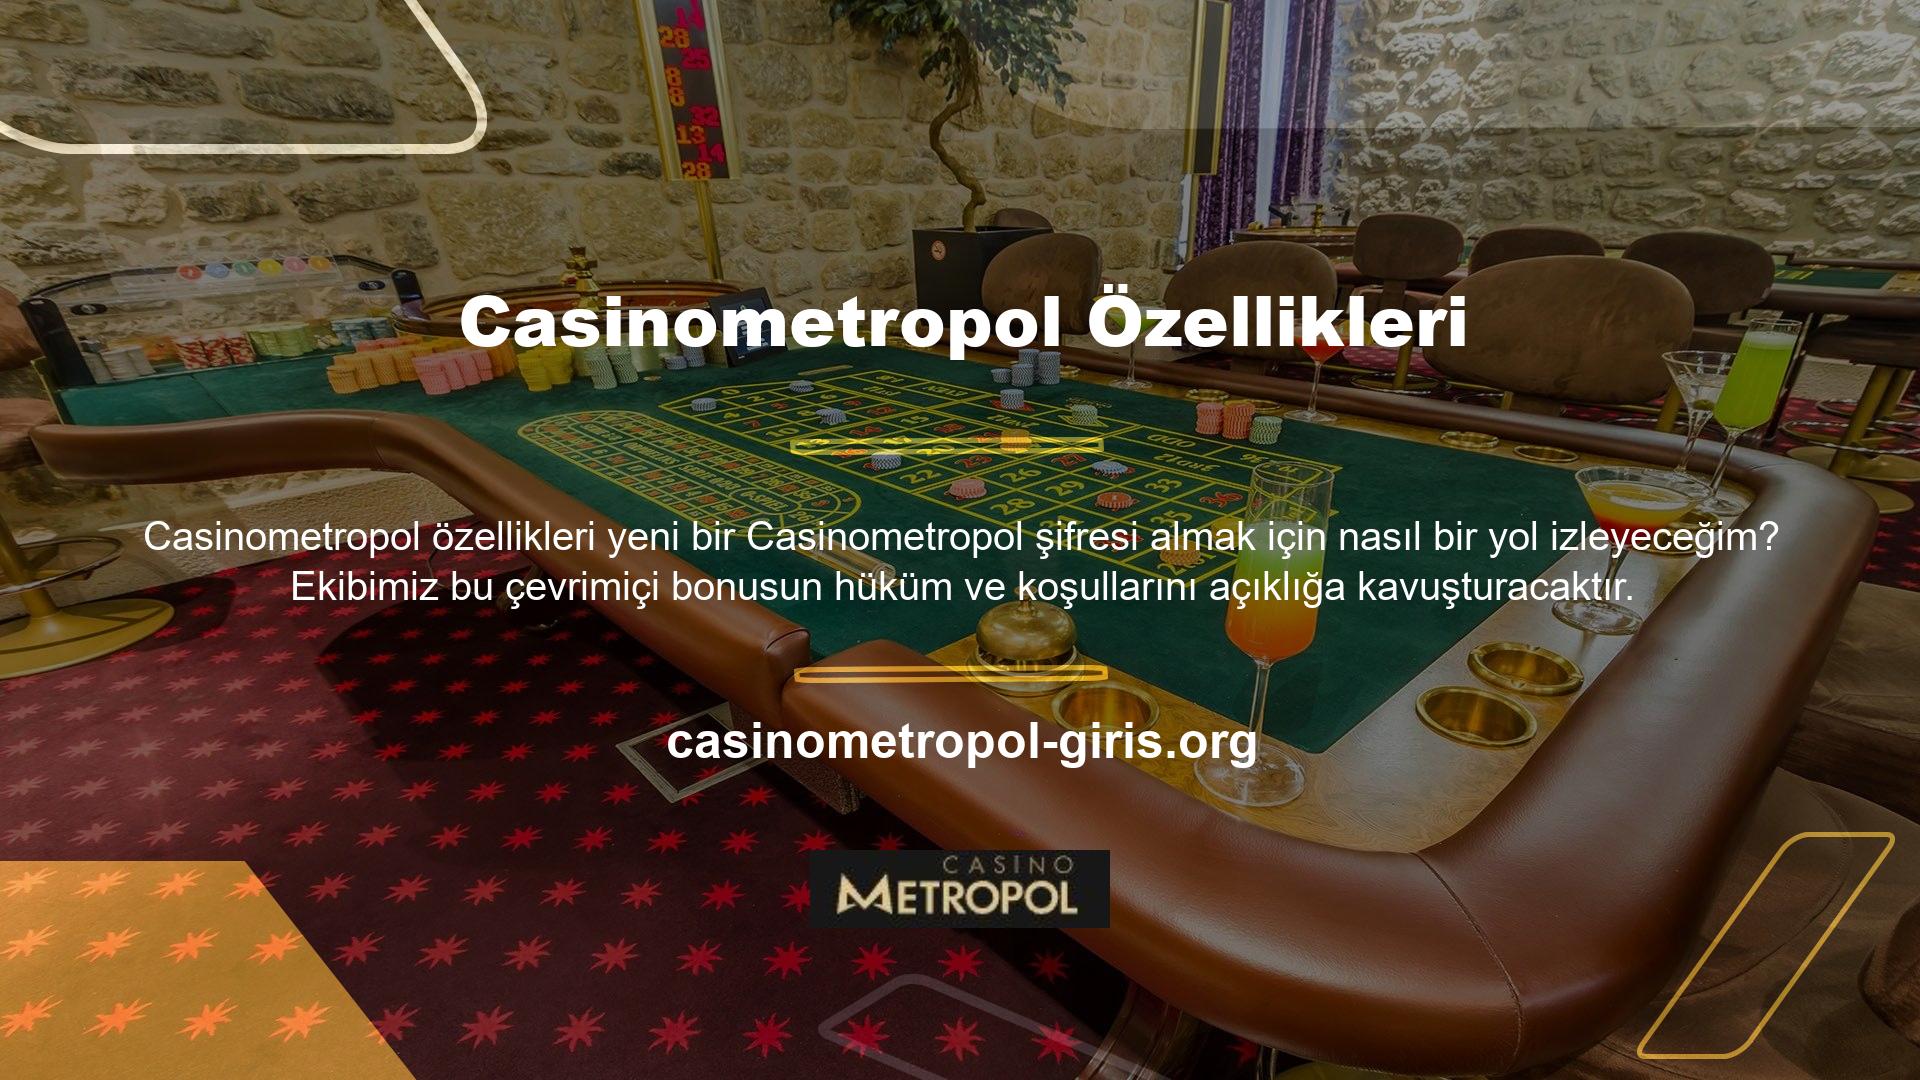 Casinometropol bonus yüzdesi Türkiye’deki bahis siteleri arasında en yüksek oranlar arasındadır